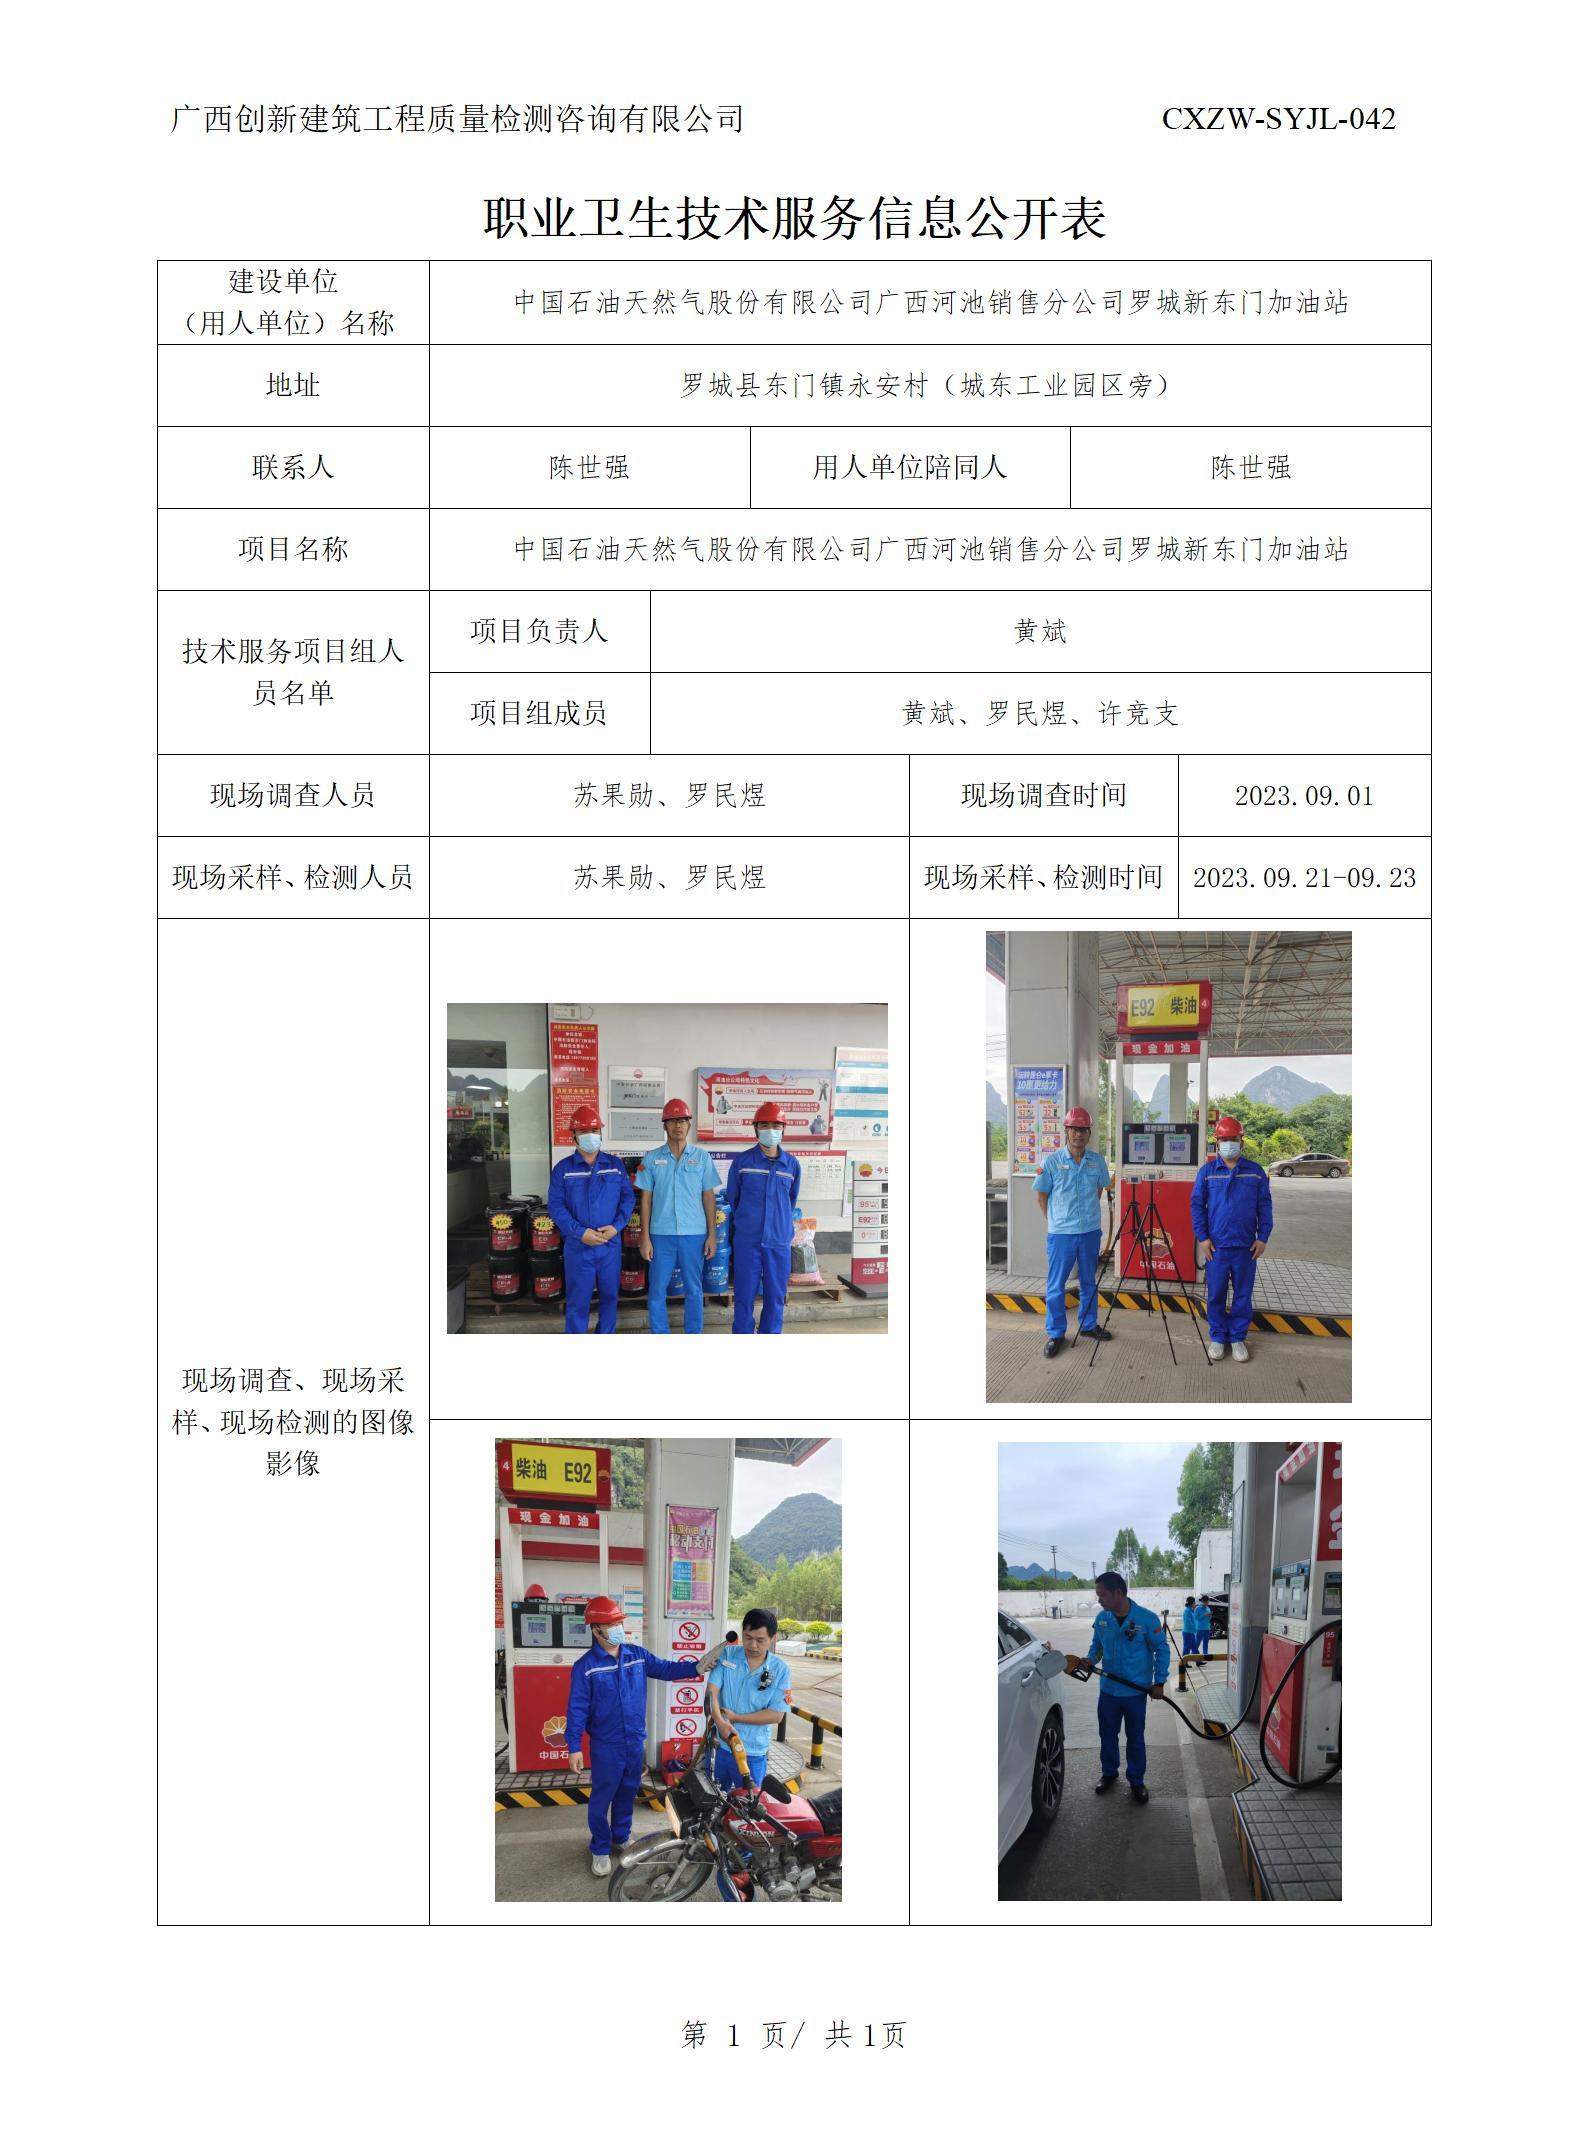 【职业卫生信息公开】中国石油天然气股份有限公司广西河池销售分公司罗城新东门加油站